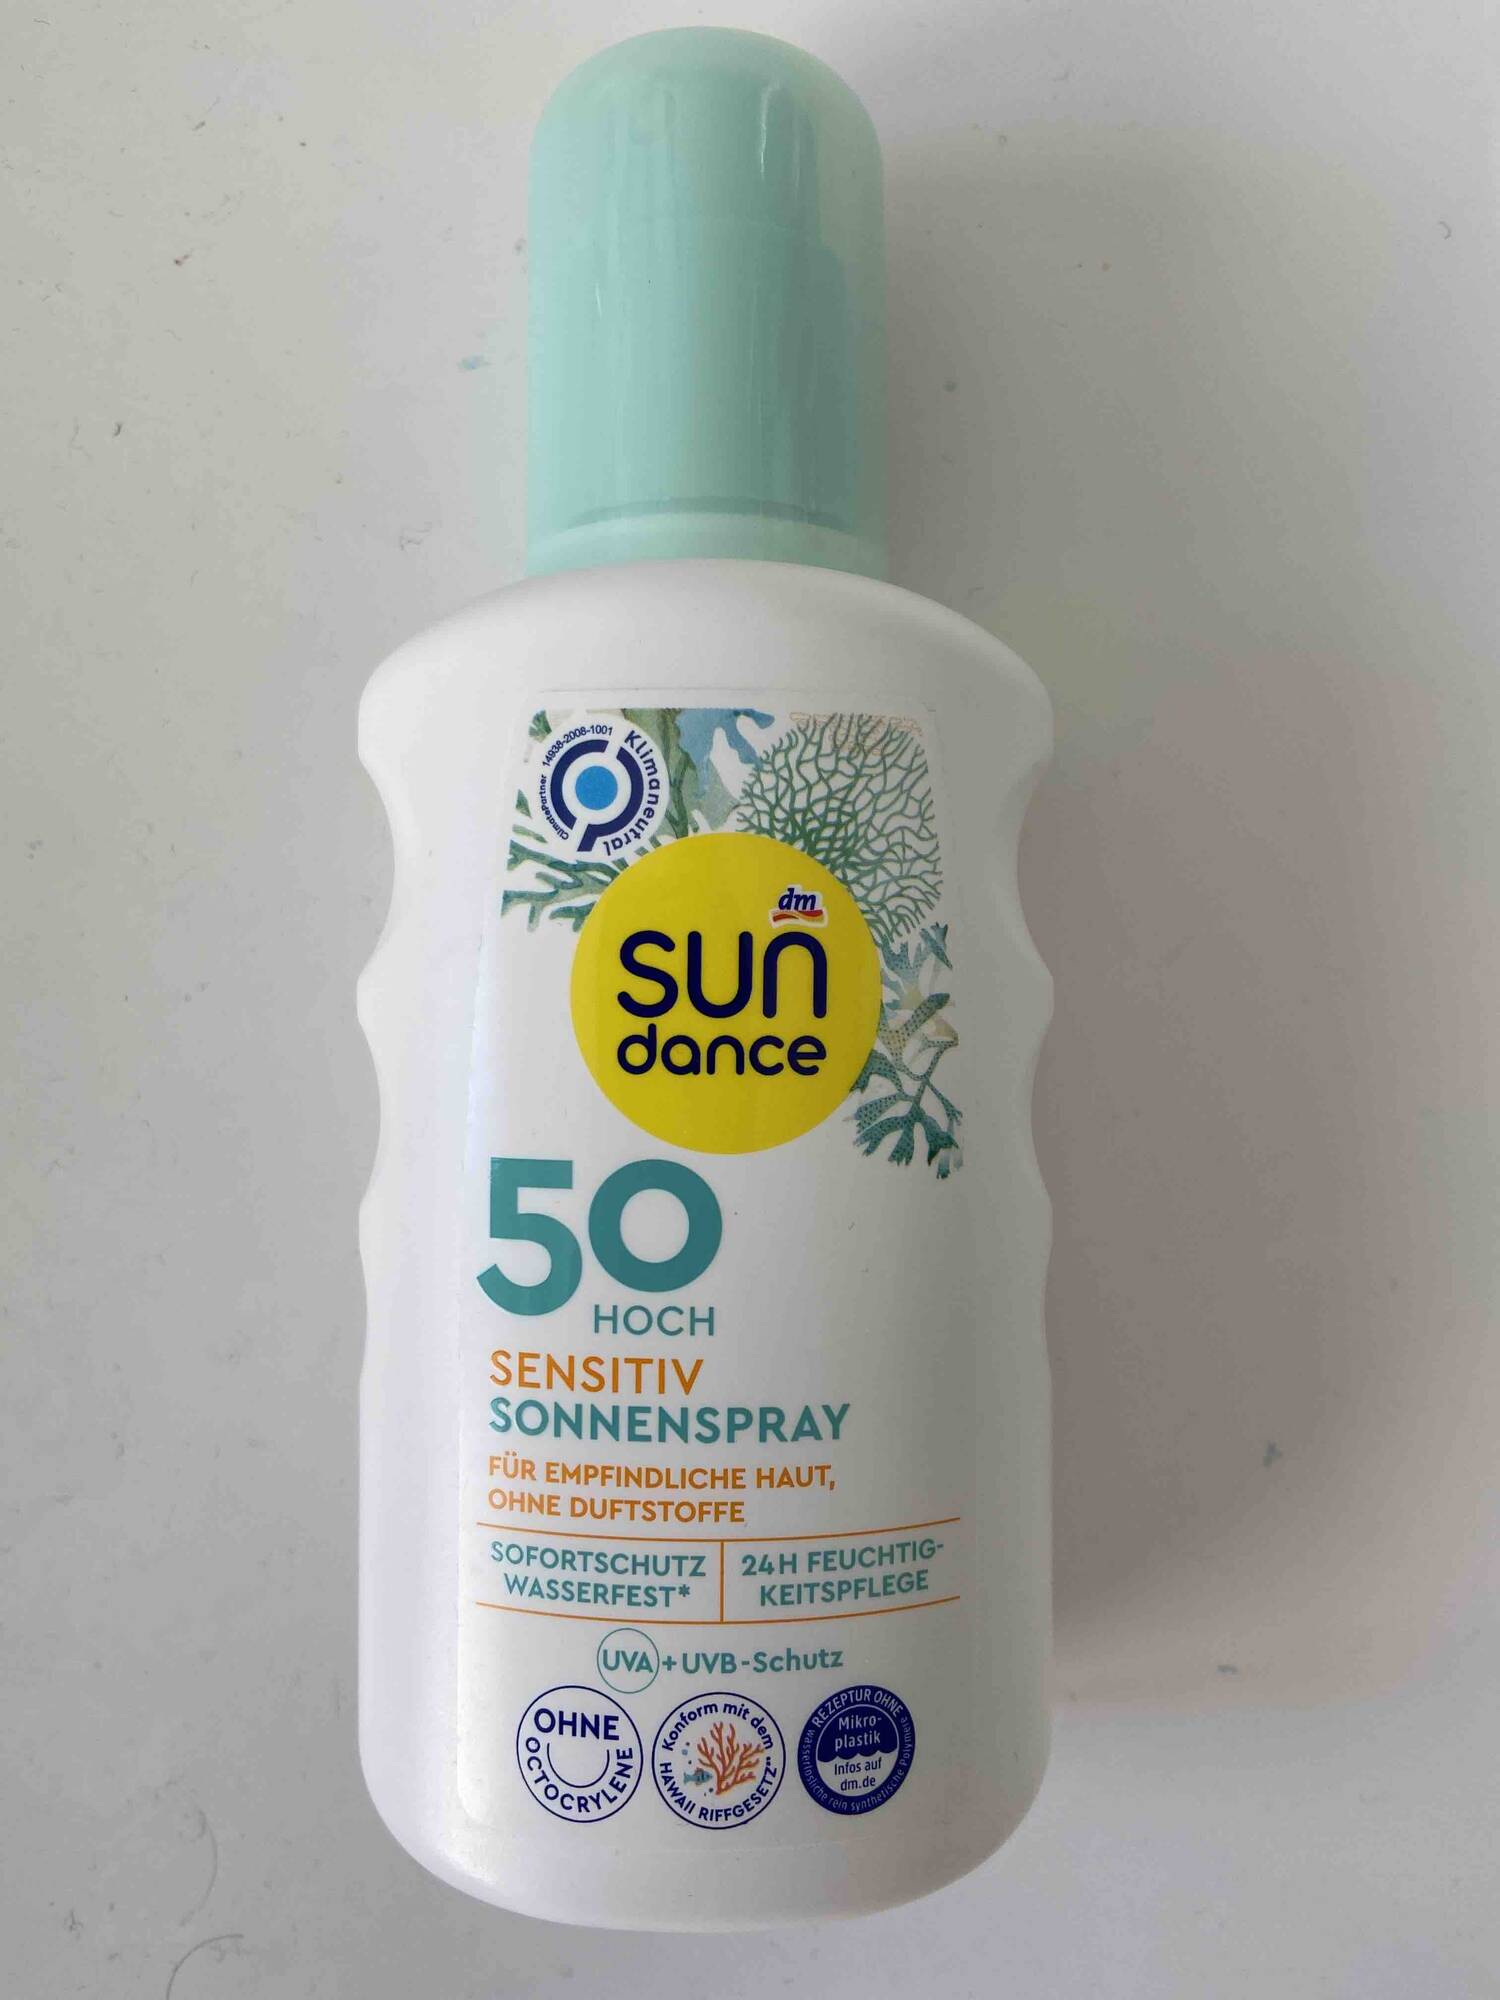 SUNDANCE - Sonnenspray sensitiv 50 hoch